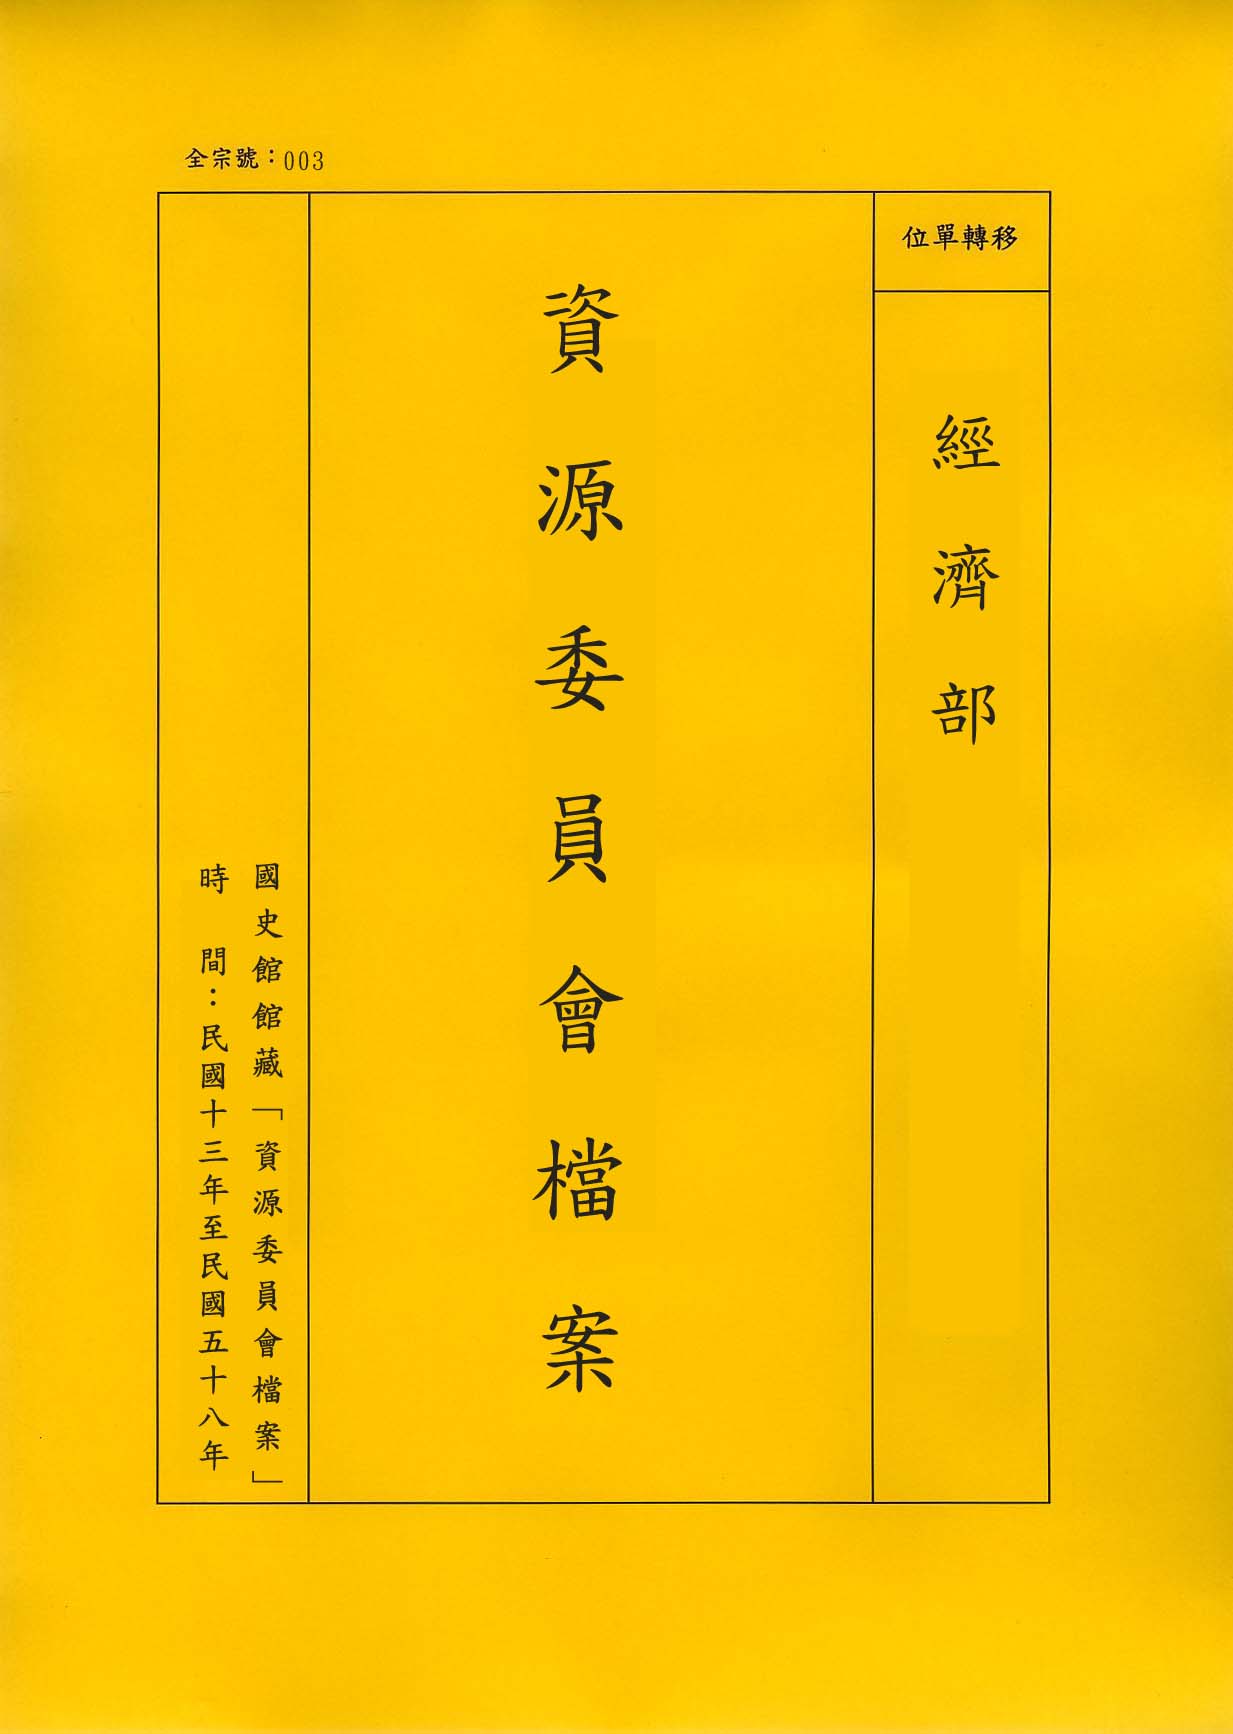 卷名:織衫褲工廠調查表─上海(二)(003-010306-0192)